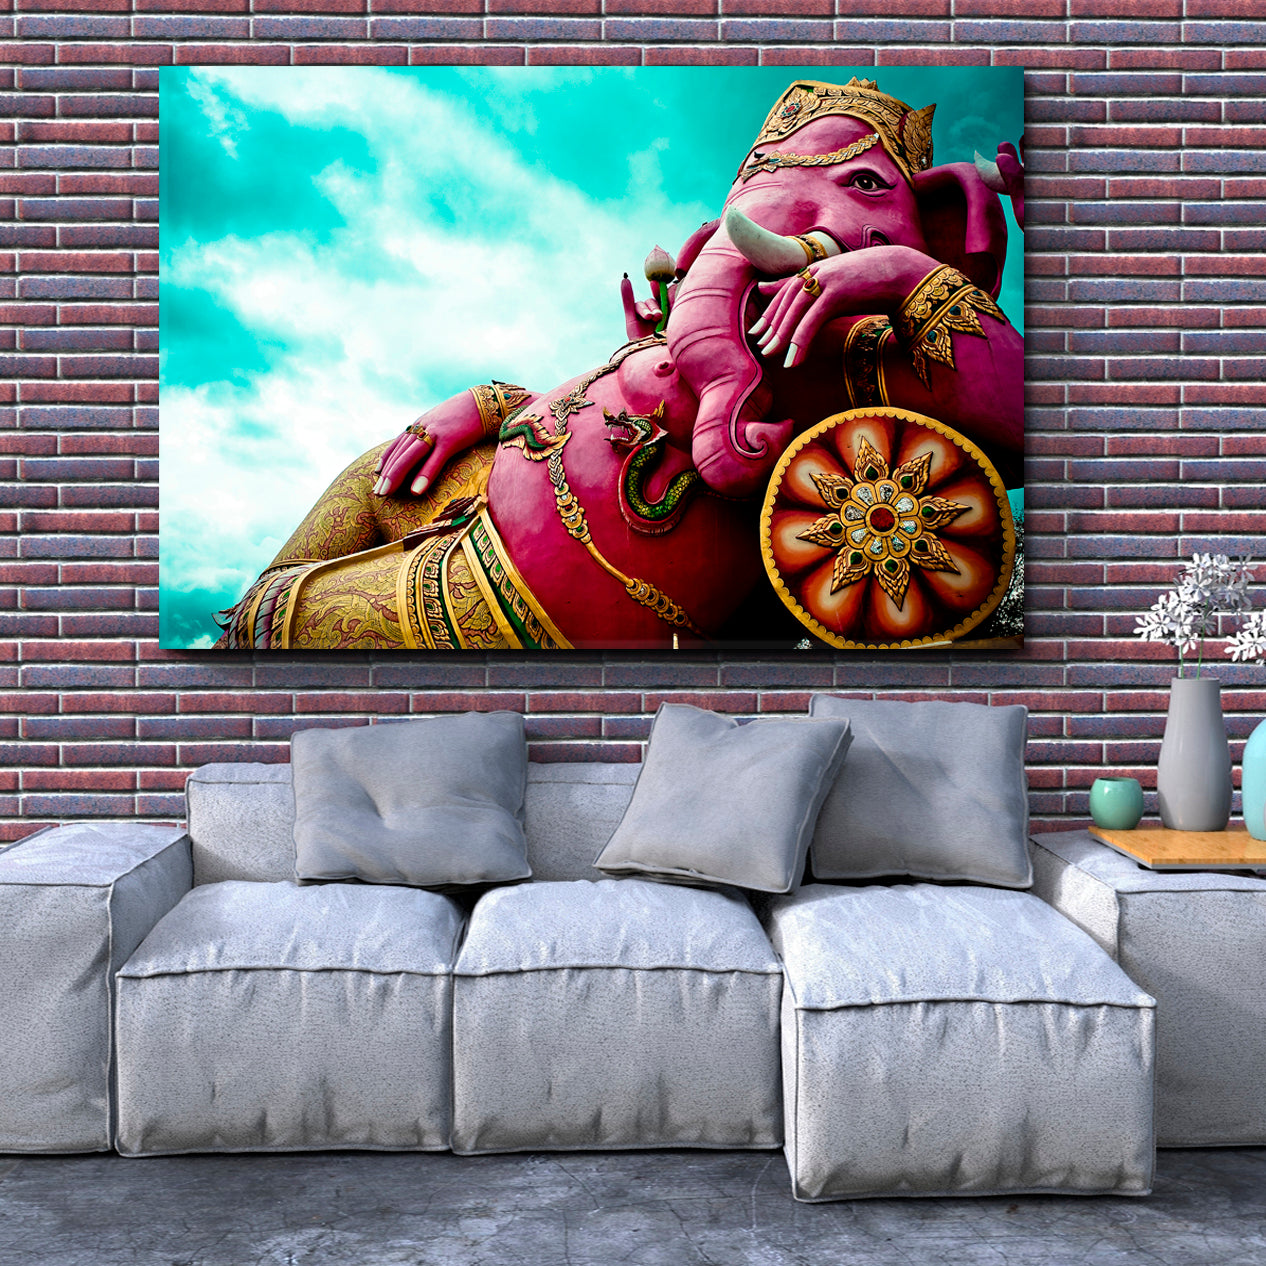 Ganesha India God Pink Elephant Buddha Religious Modern Art Artesty   